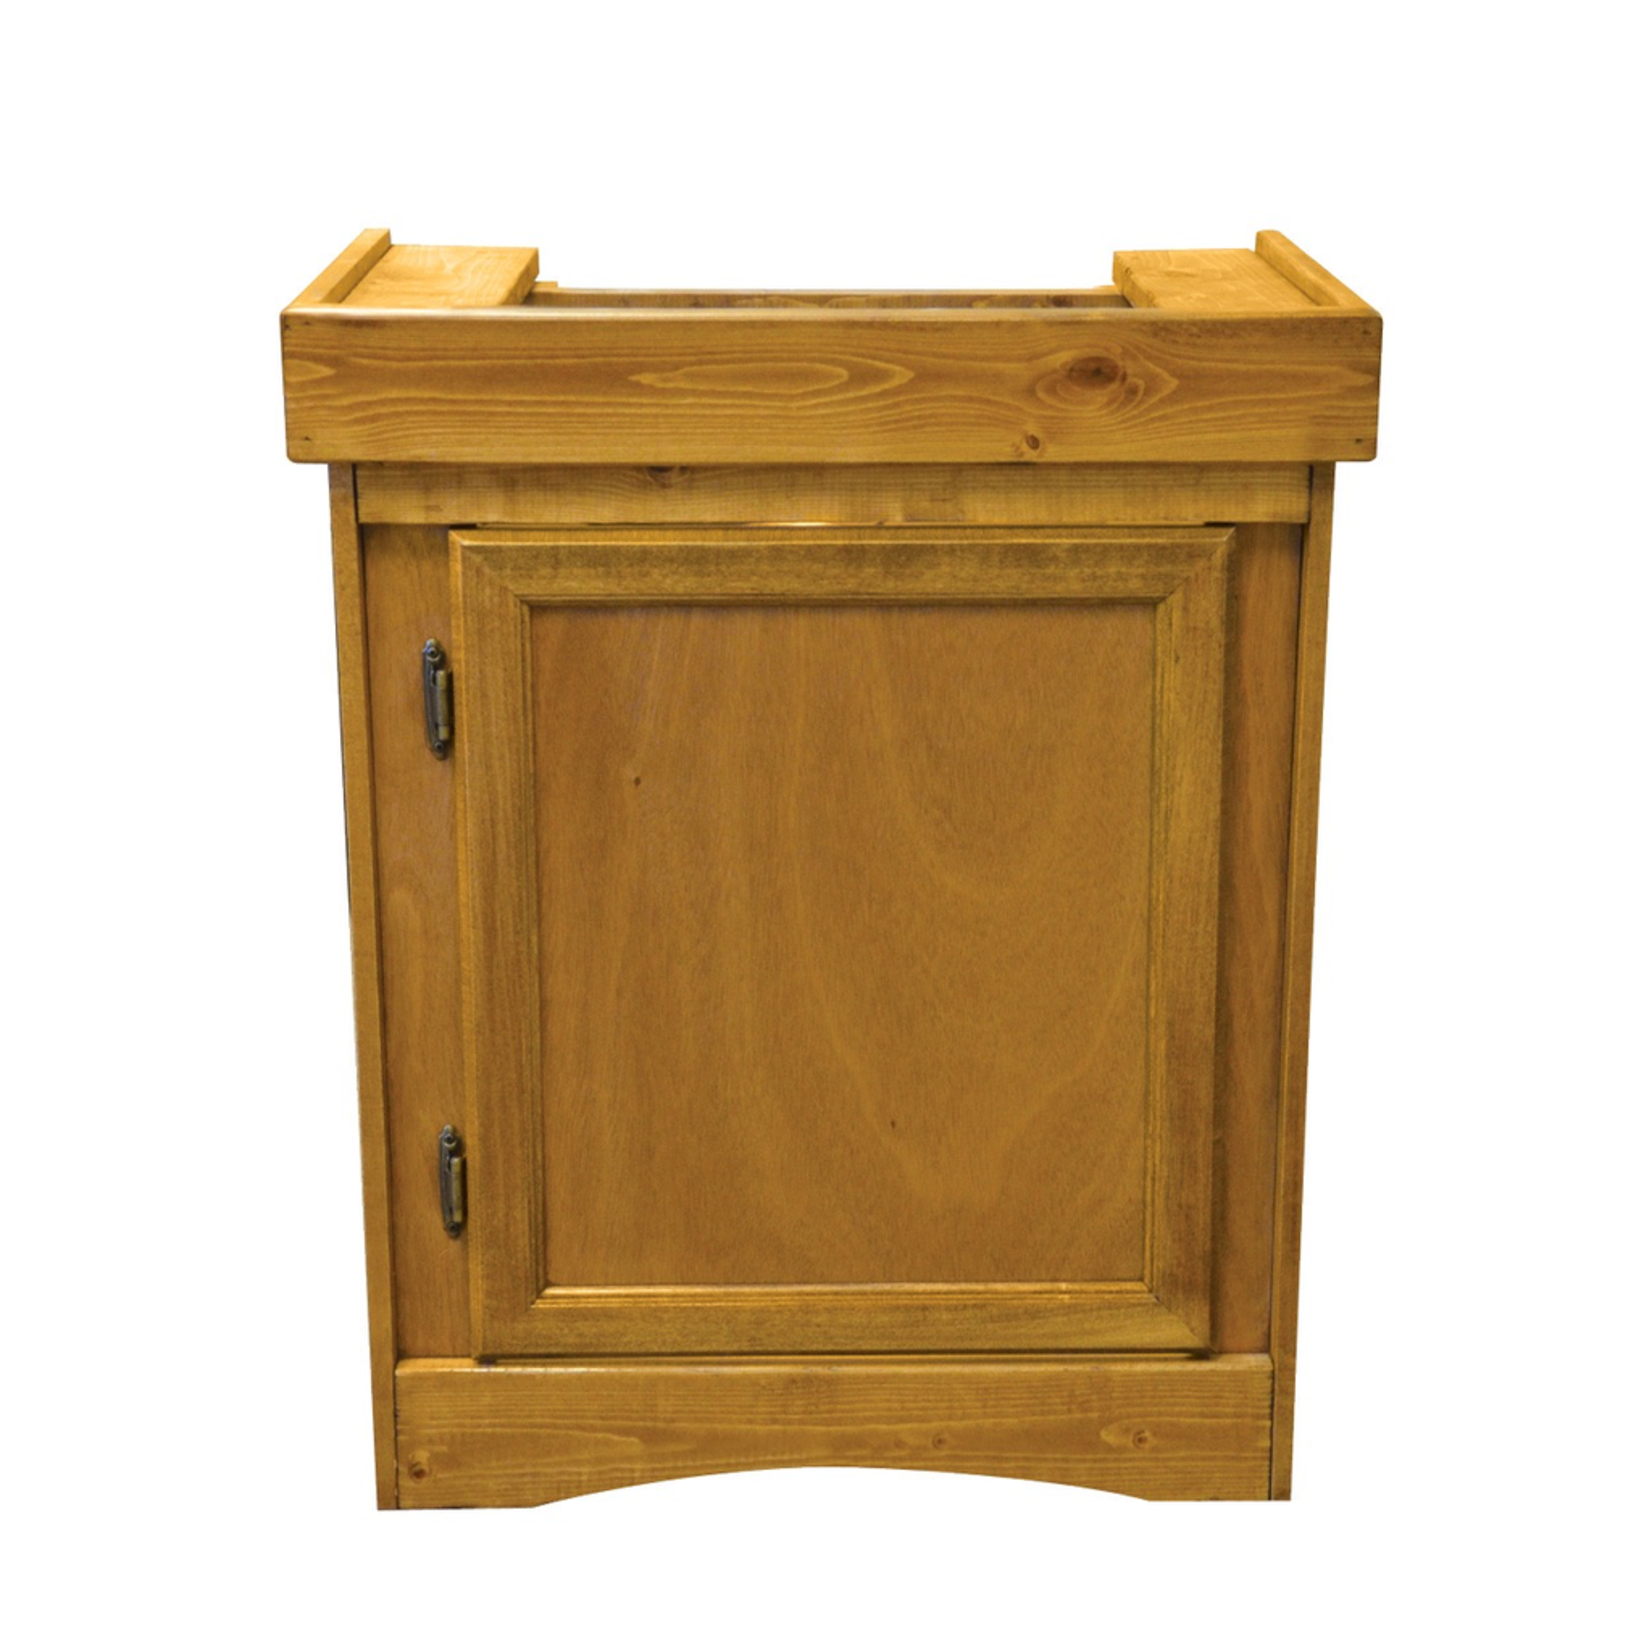 SEAPORA (W) Monarch Cabinet Stand - Oak - 24" x 12"